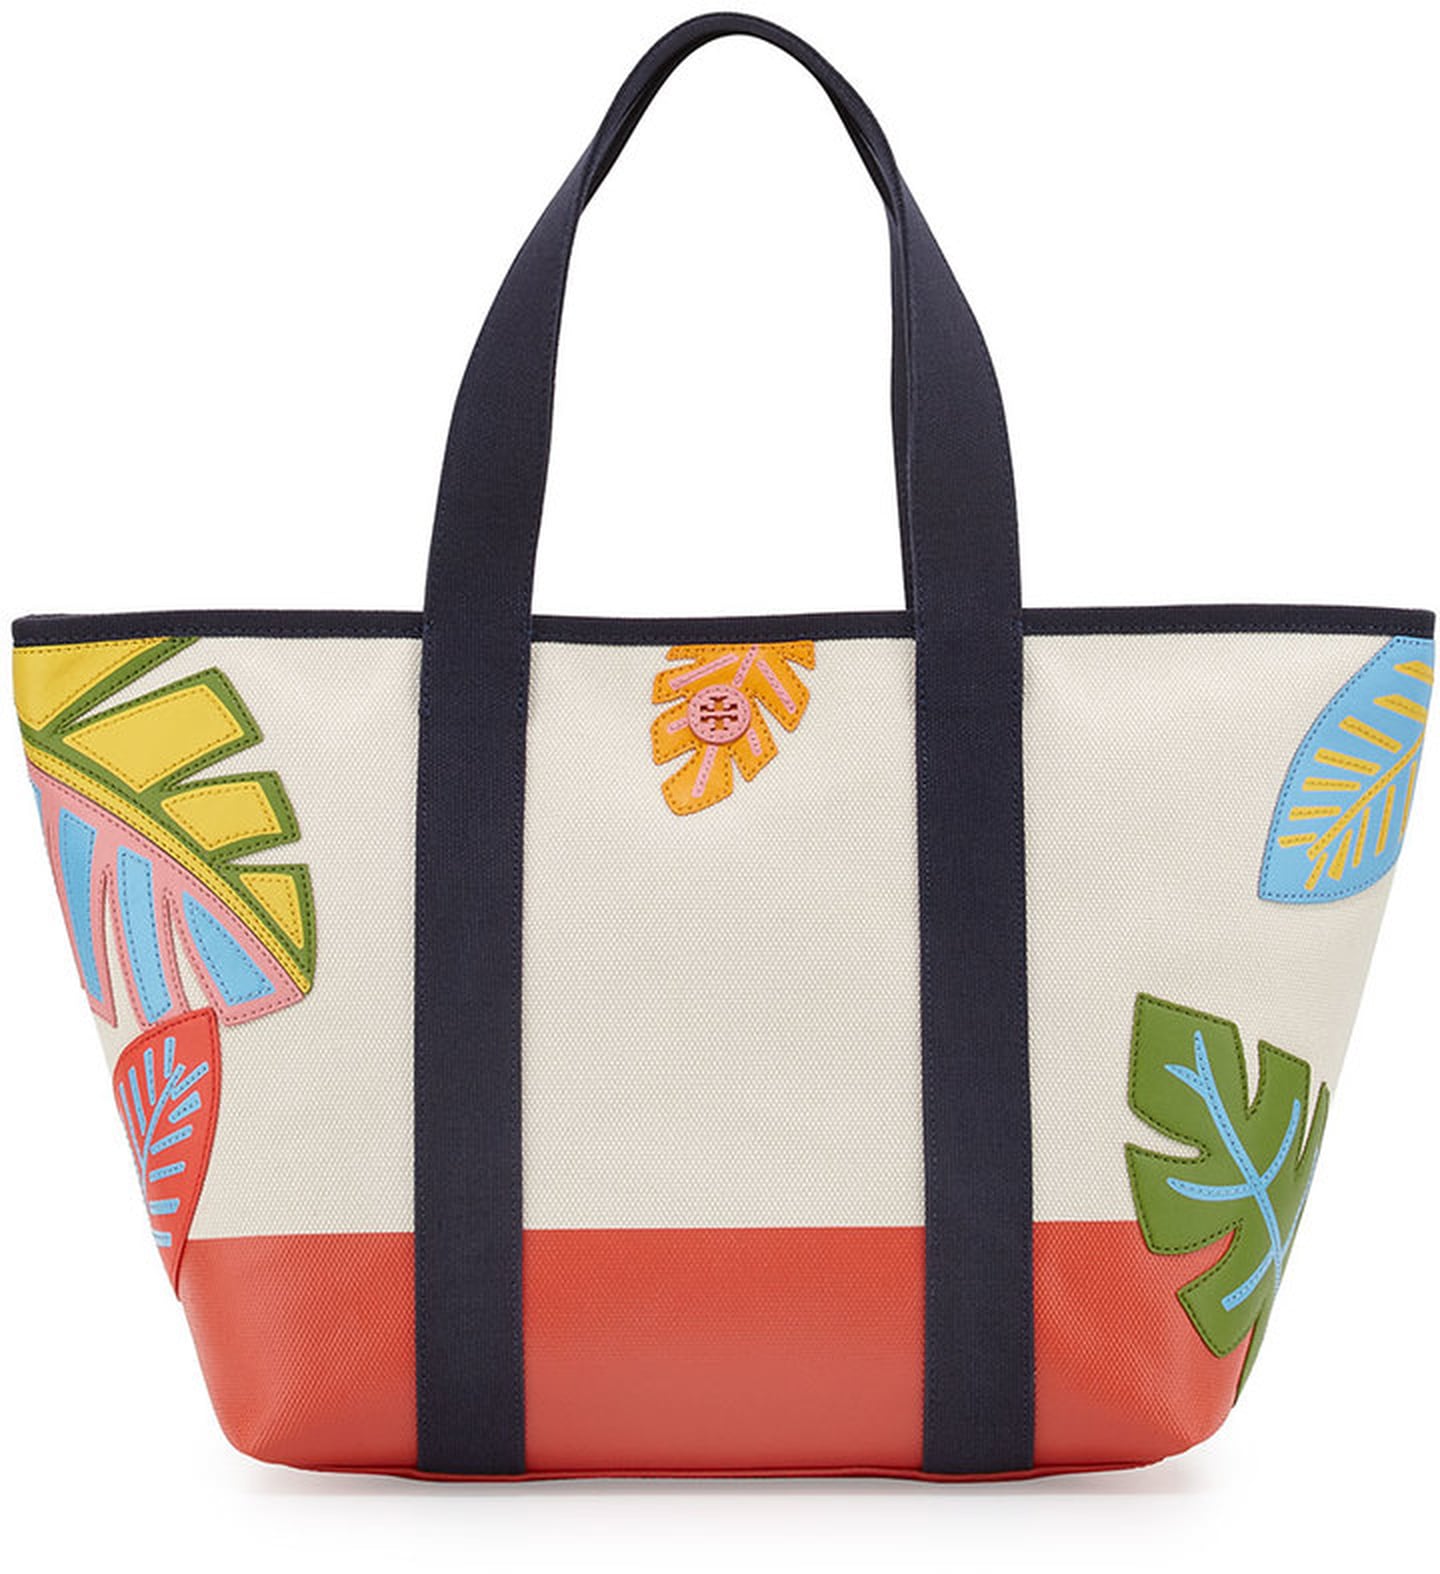 Stylish Beach Bags | POPSUGAR Fashion